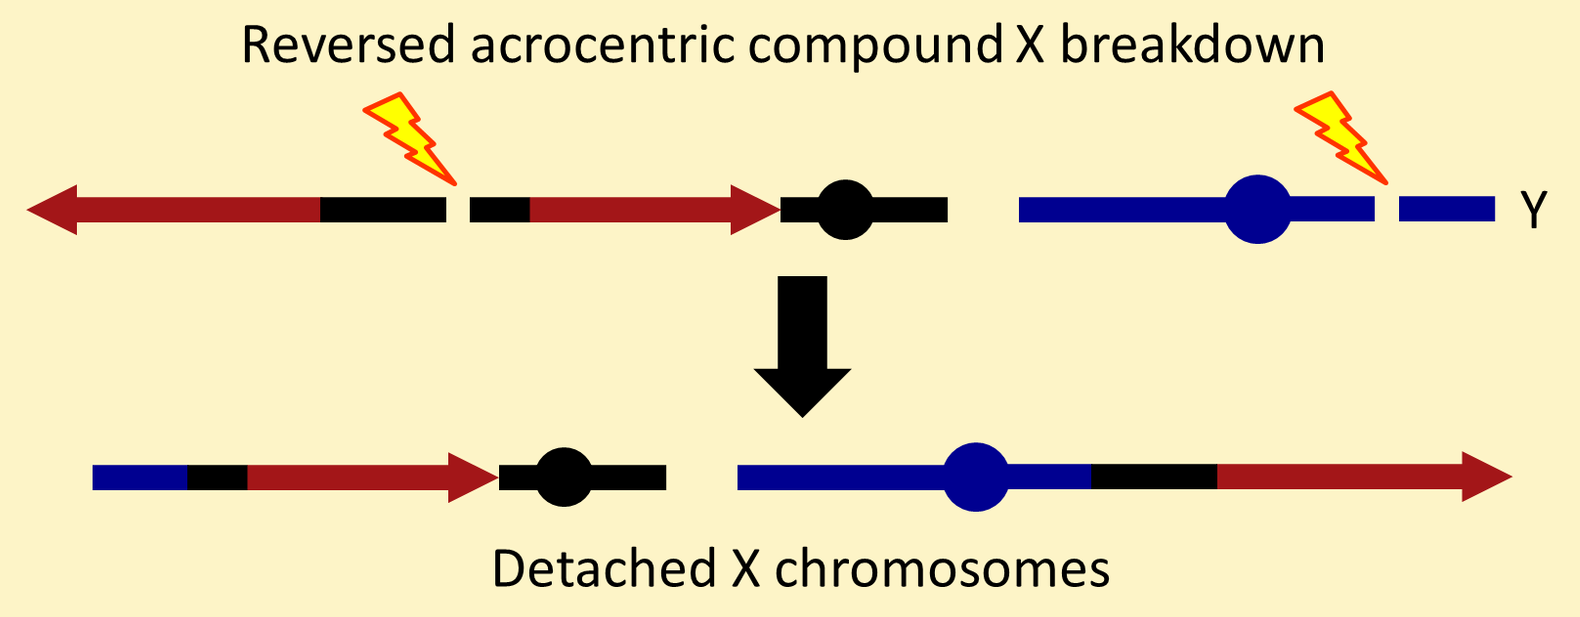 Detached X chromosomes